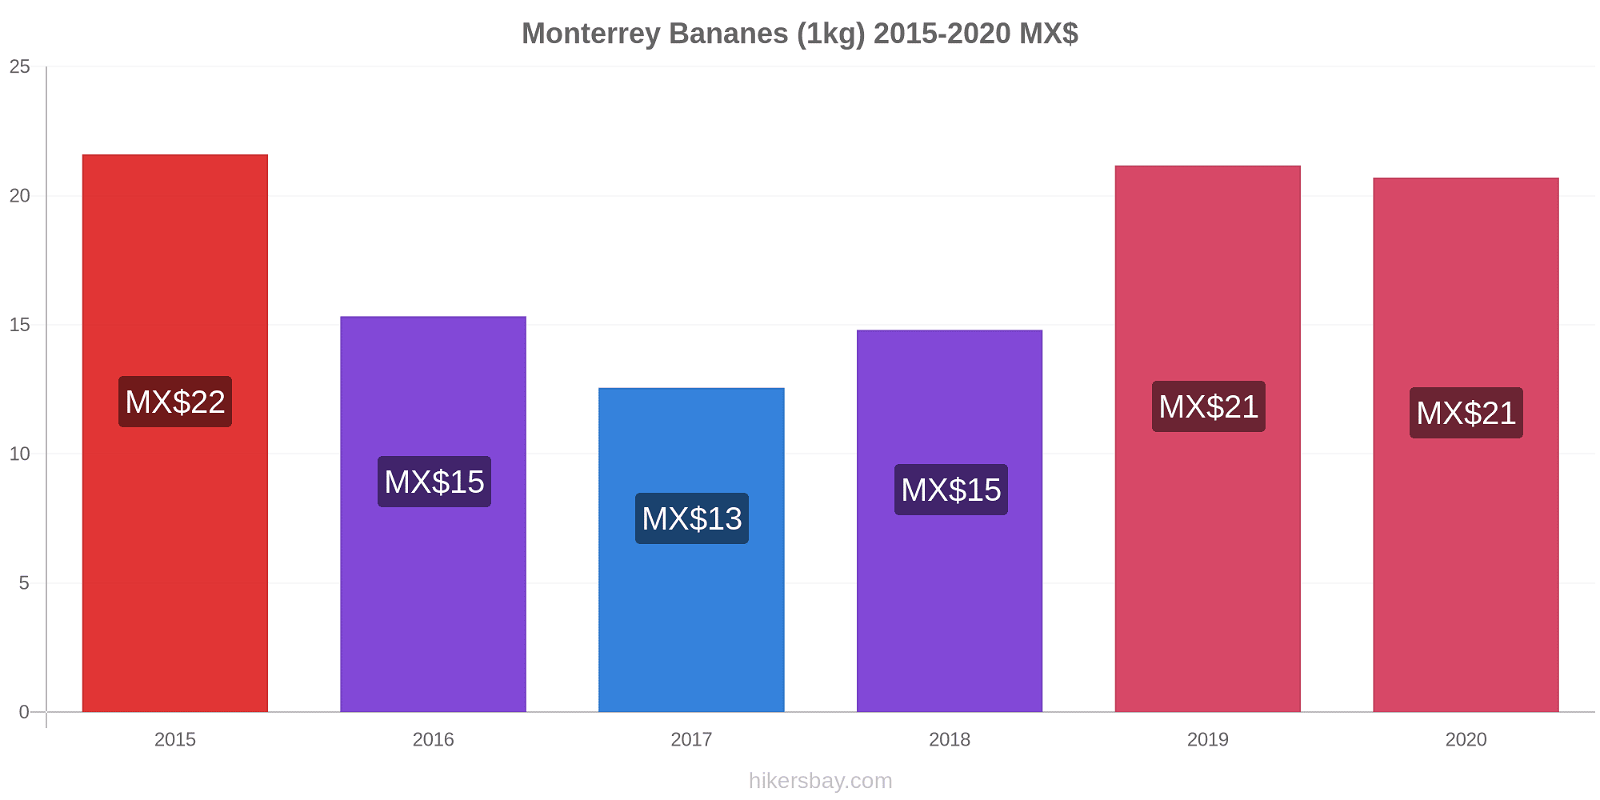 Monterrey changements de prix Bananes (1kg) hikersbay.com